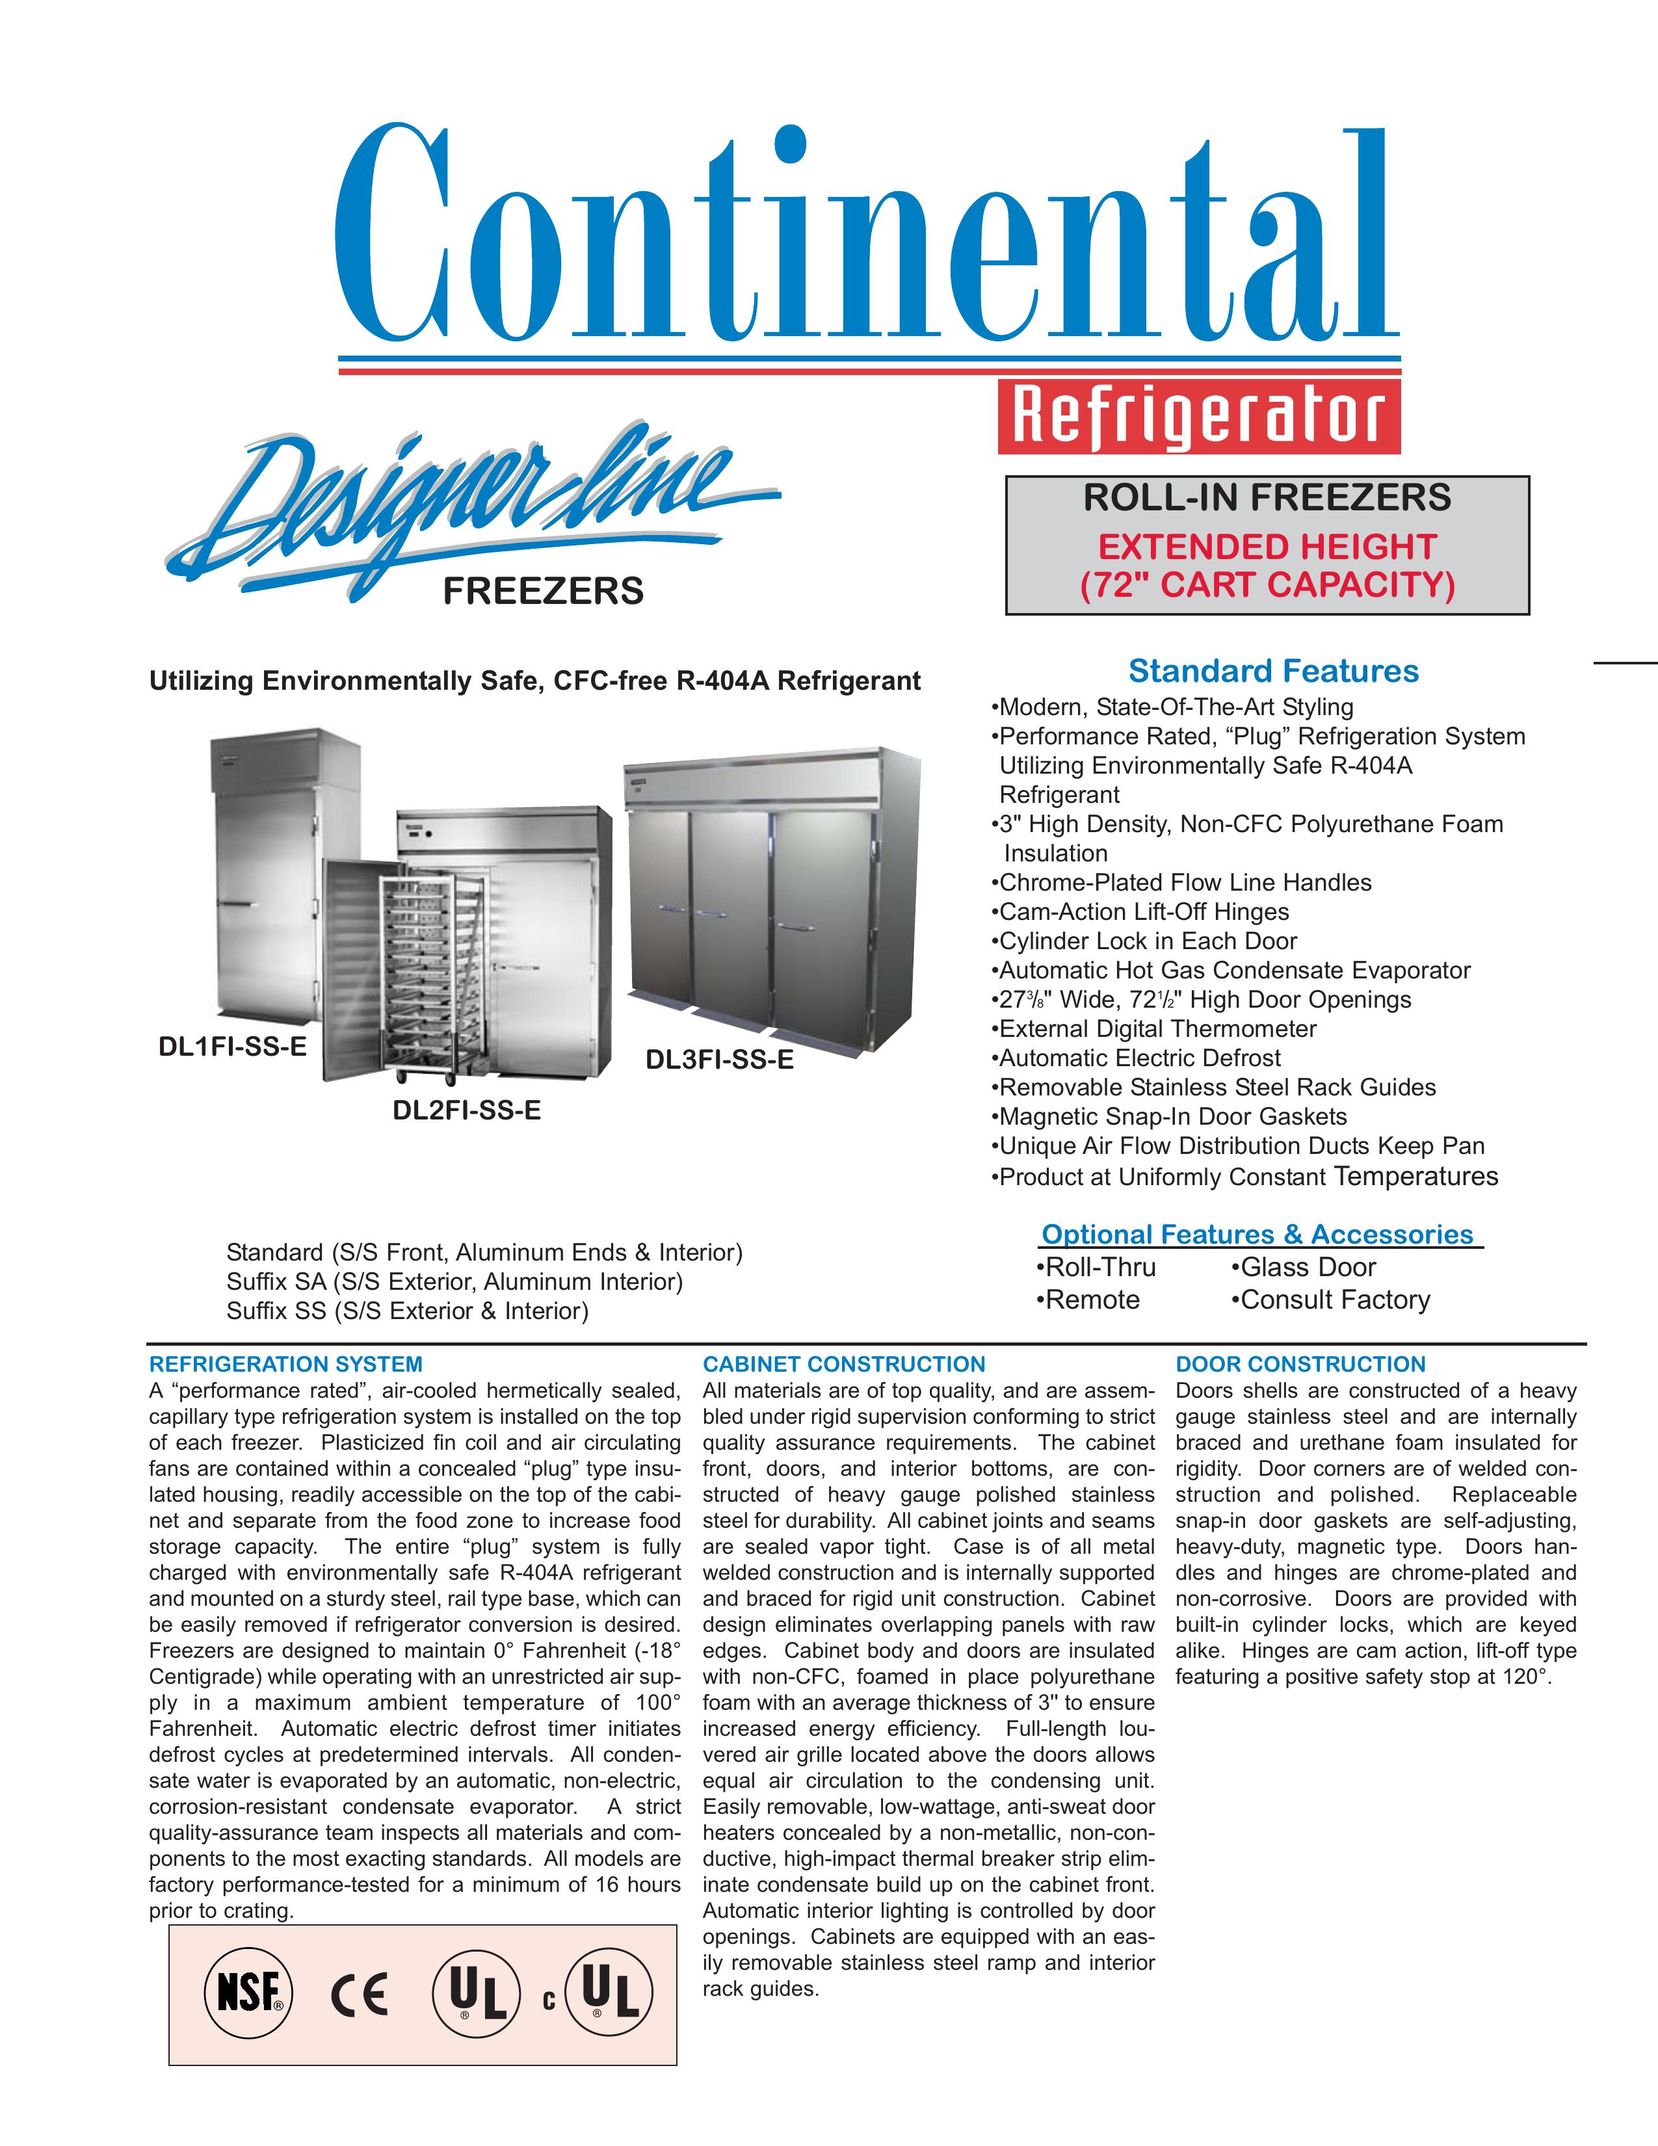 Continental Refrigerator DL1FI-SS-E Freezer User Manual